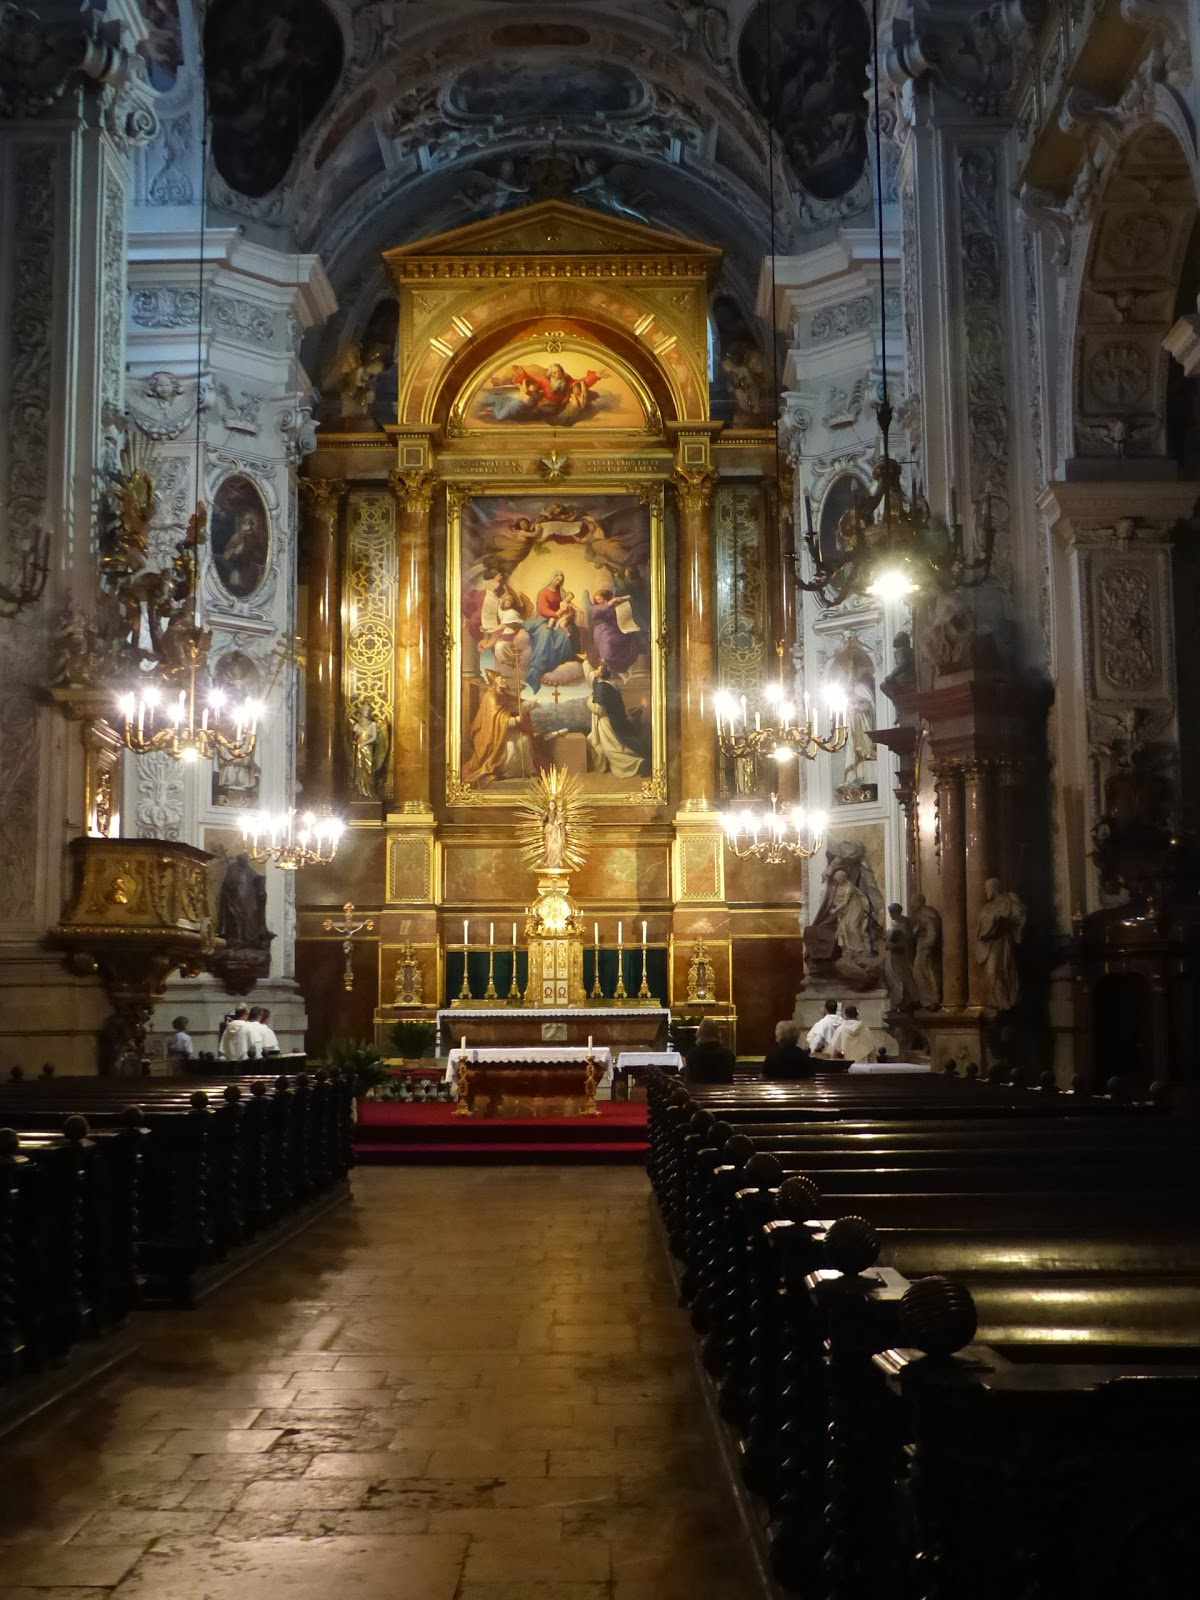 Wien, Katholisches Pfarramt Maria Rotunda (Dominikánus templom),